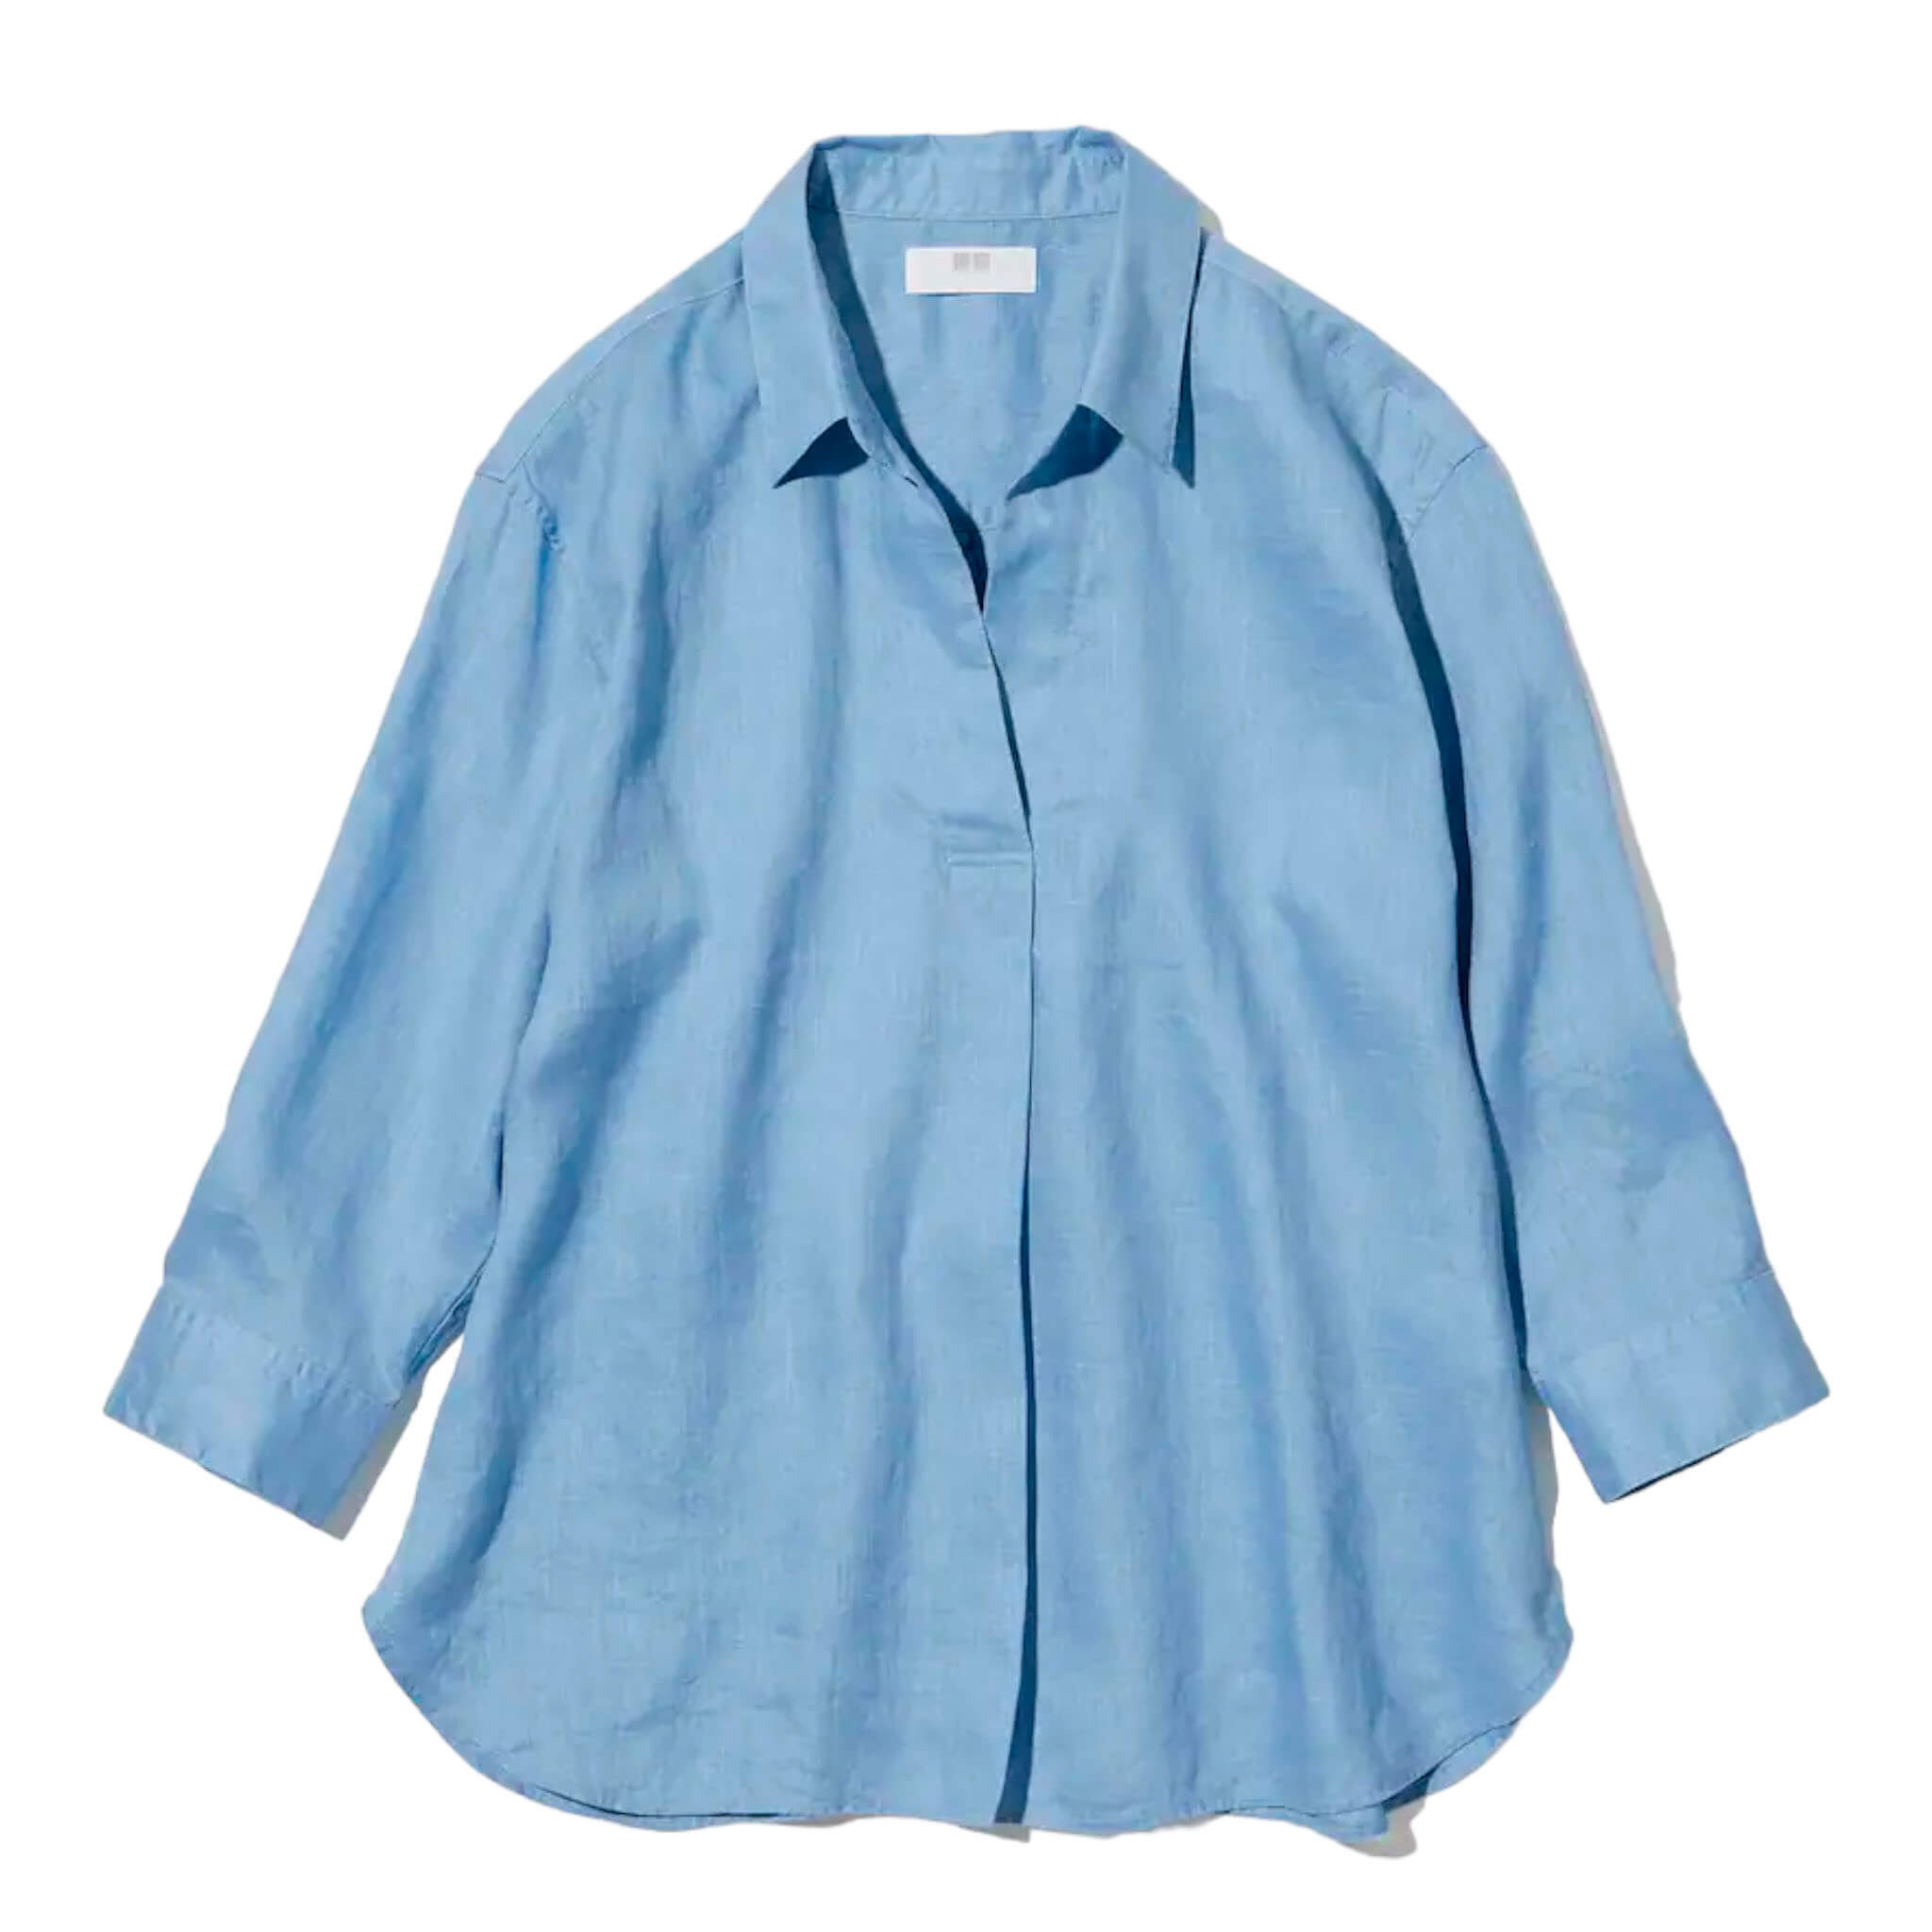 Рубашка Uniqlo Premium Linen Skipper Collar 3/4 Sleeved, голубой рубашка uniqlo 100% linen skipper collar 3 4 sleeve светло фиолетовый